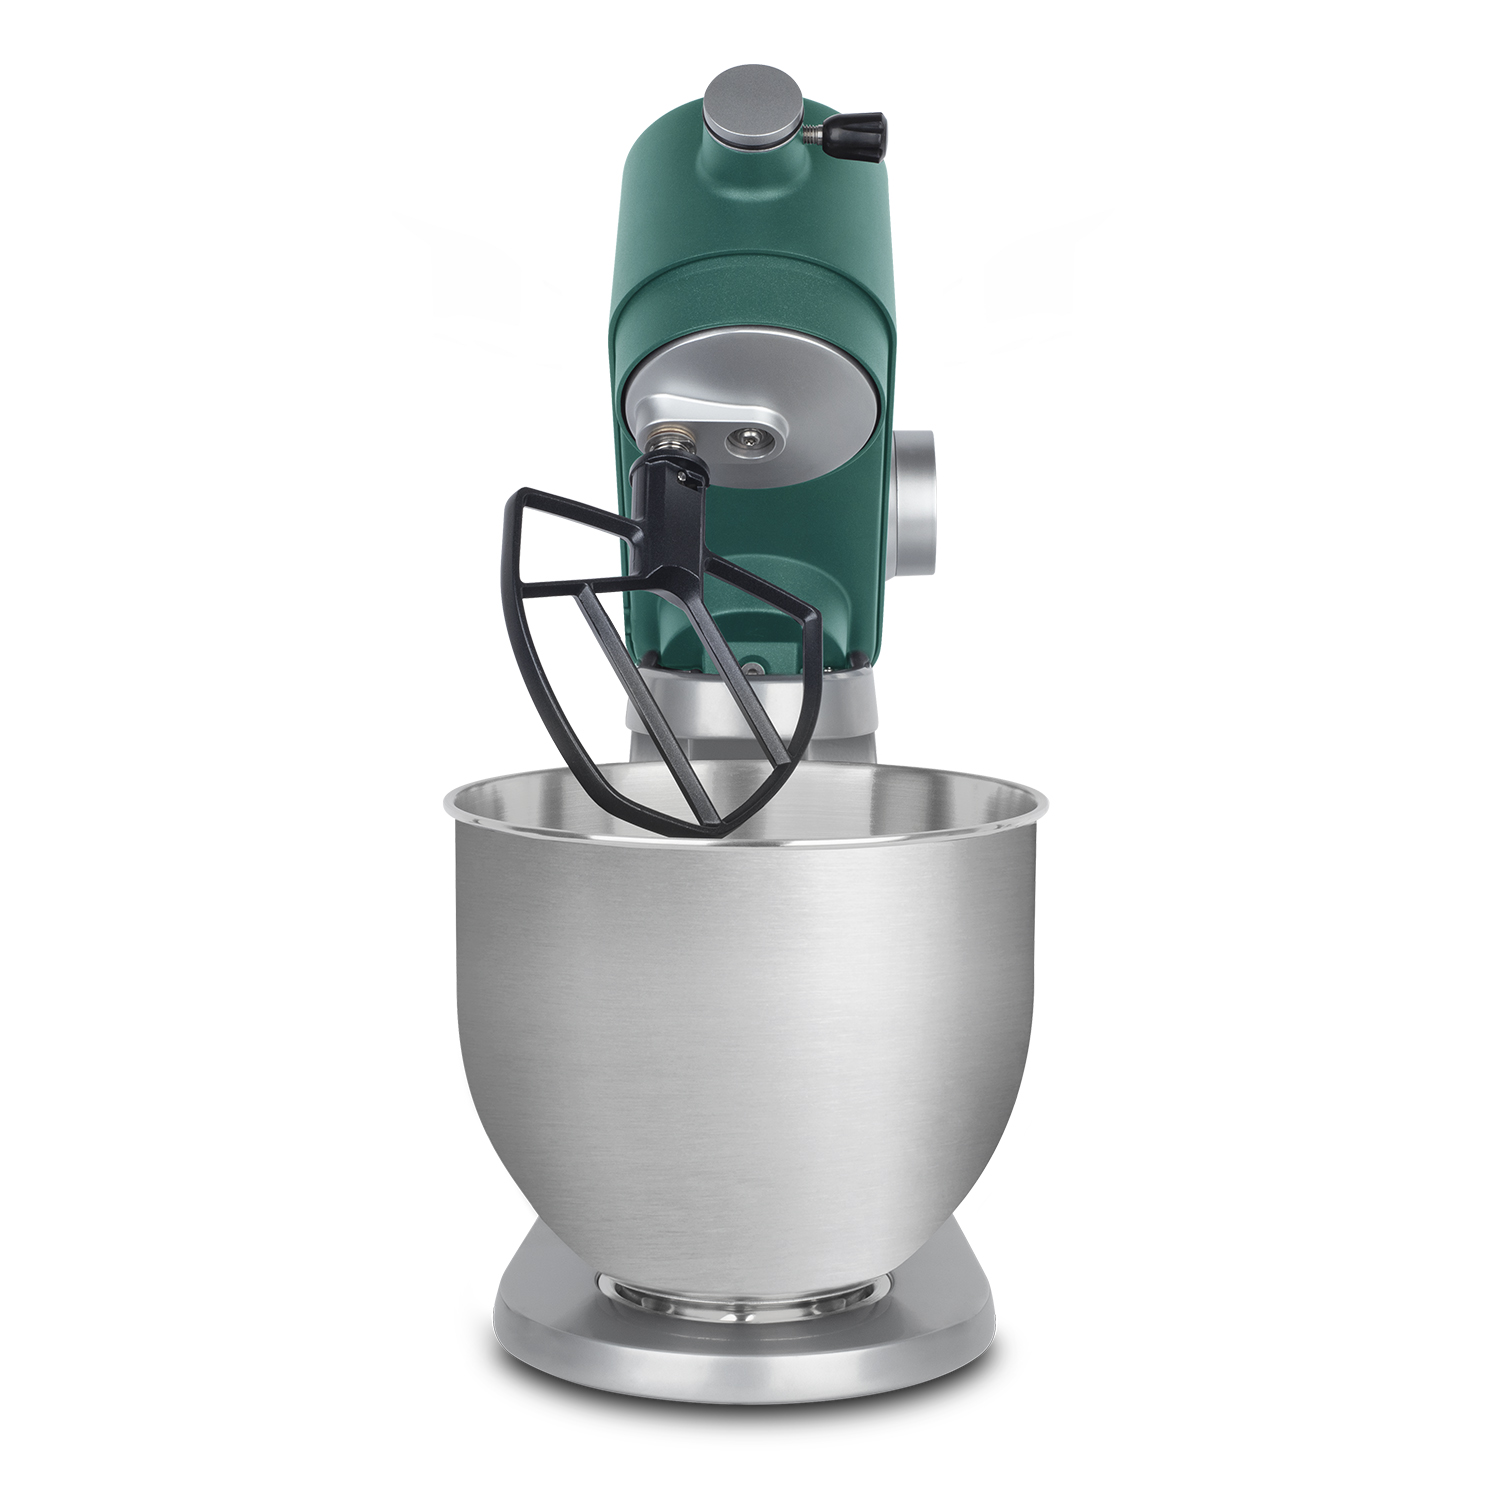 800 8 Geschwindigkeiten Watt) - Gebäck-Roboter H.KOENIG Grün / Küchenmaschine 5 (Rührschüsselkapazität: Silber H.Koenig l, KM128